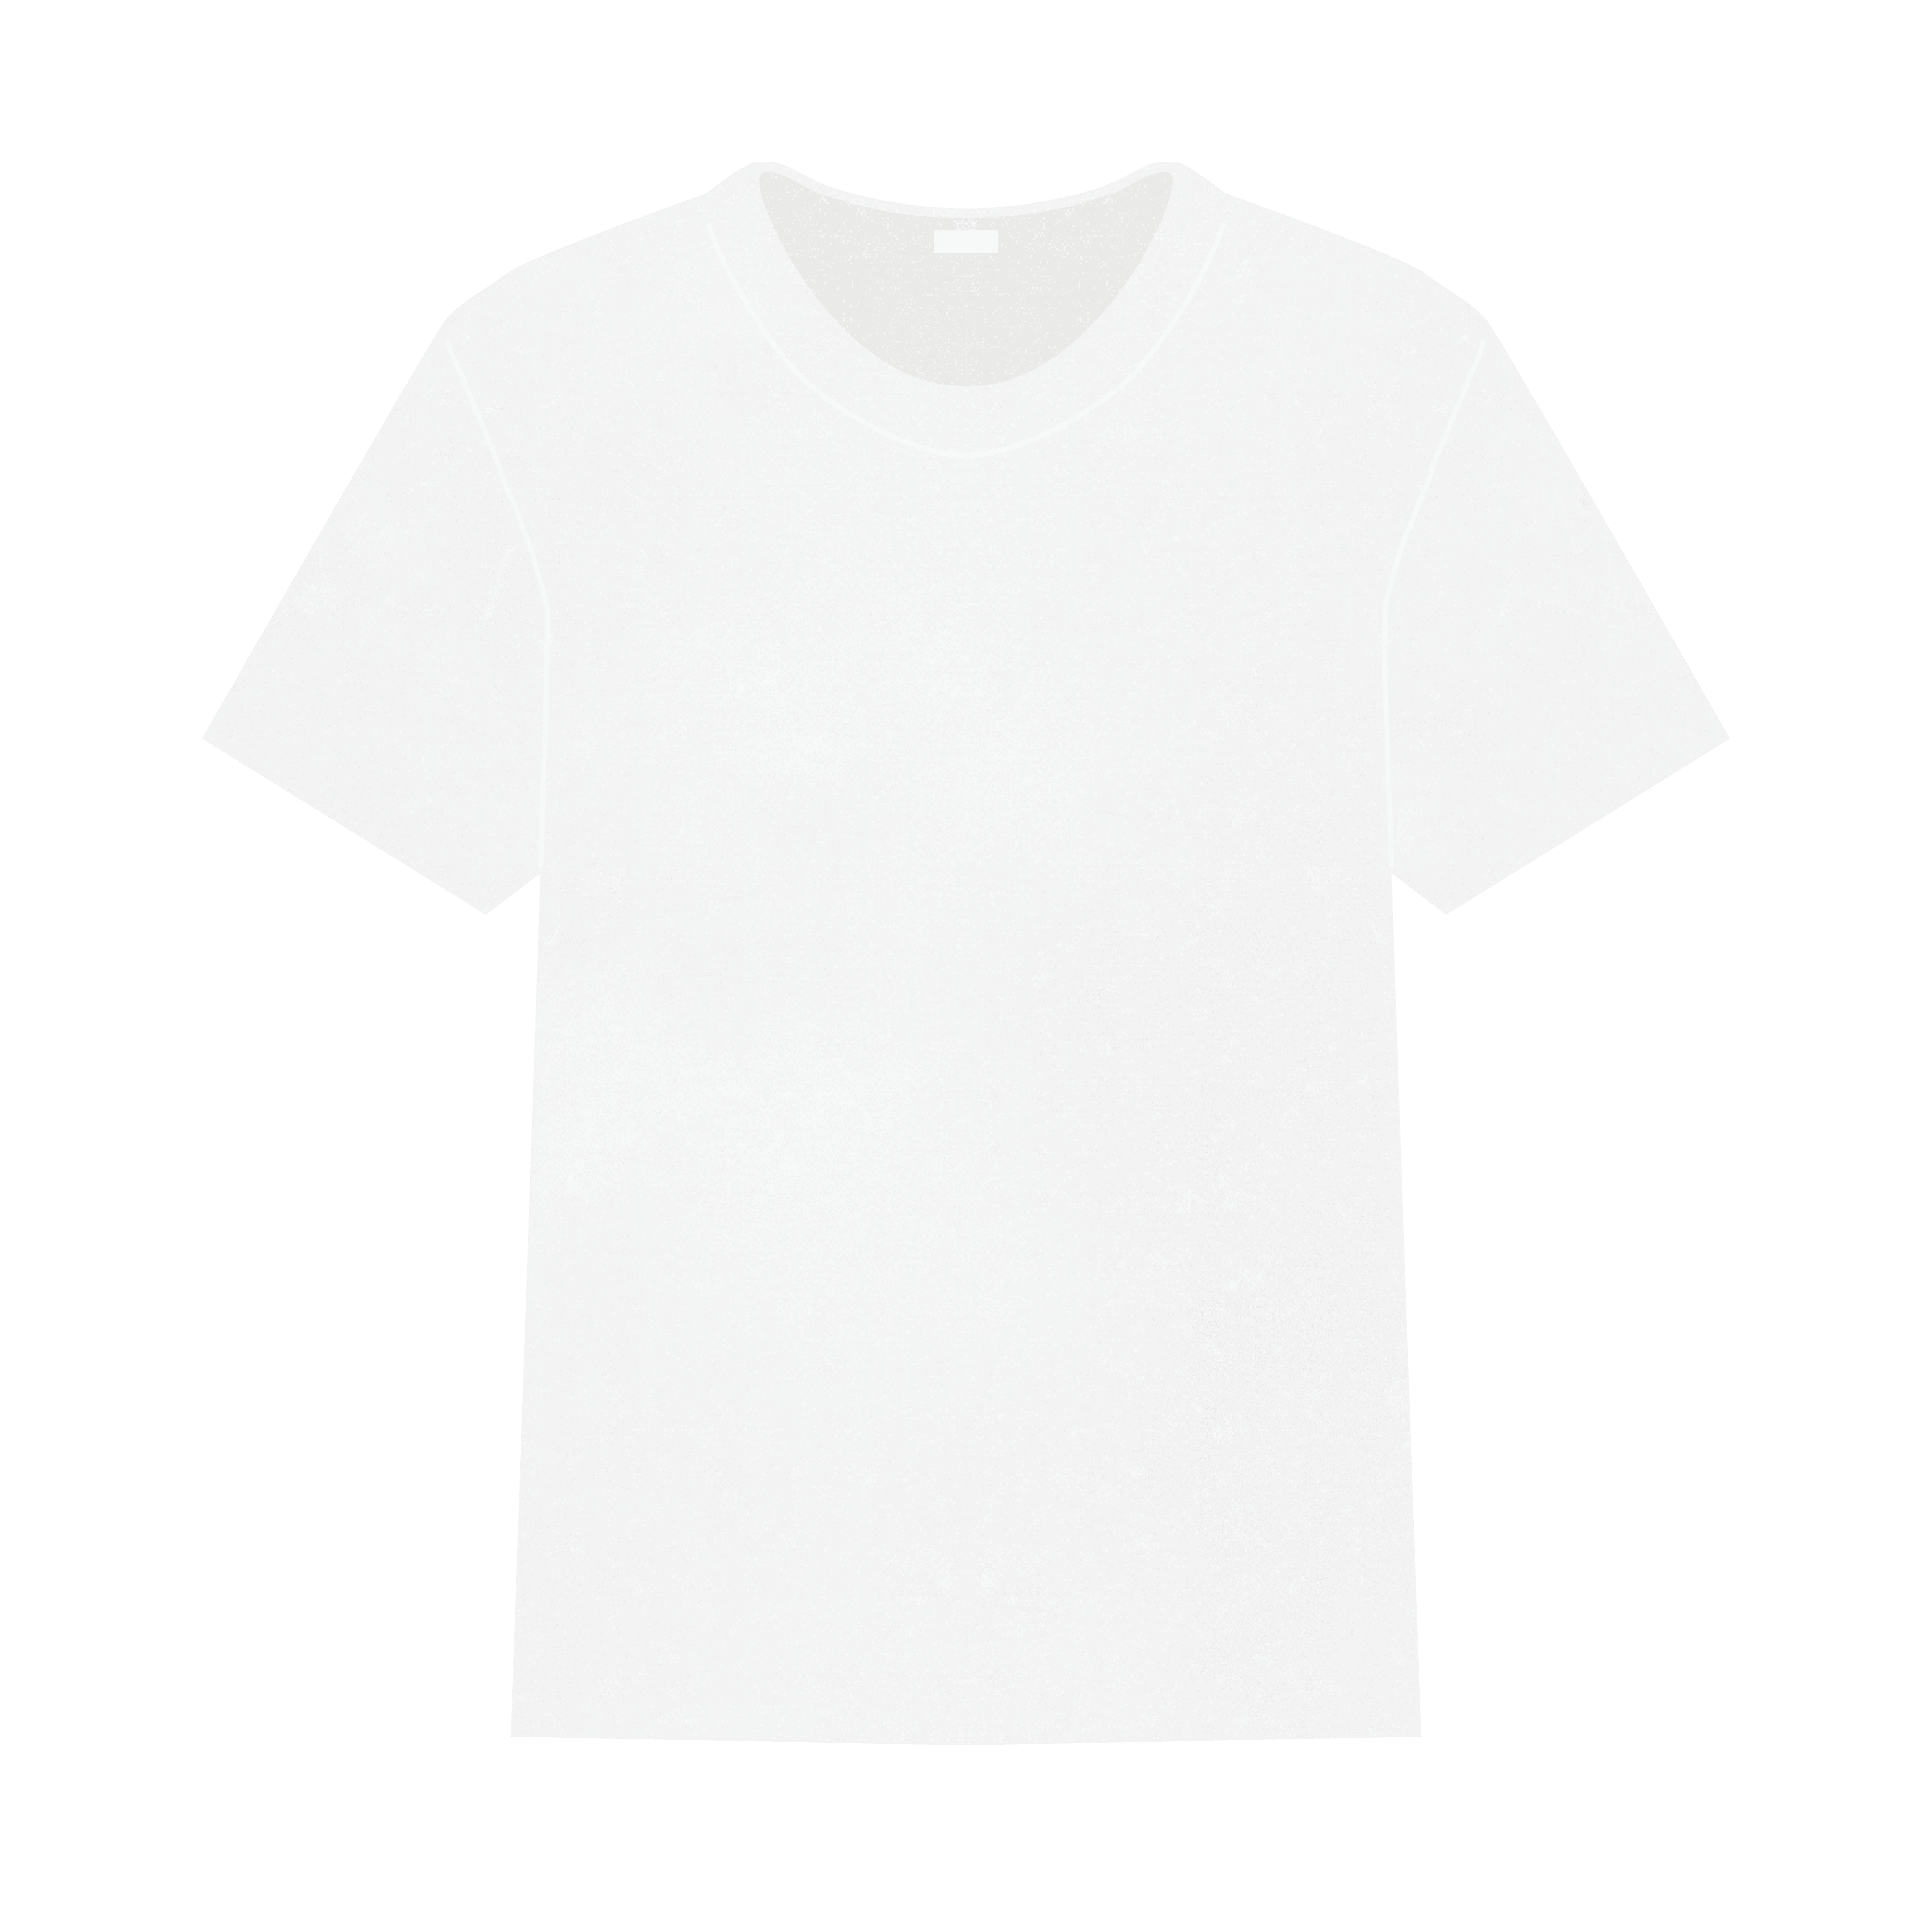 フリー素材 骨格診断 Tシャツのイラスト イメコンのデザイン わかな Note